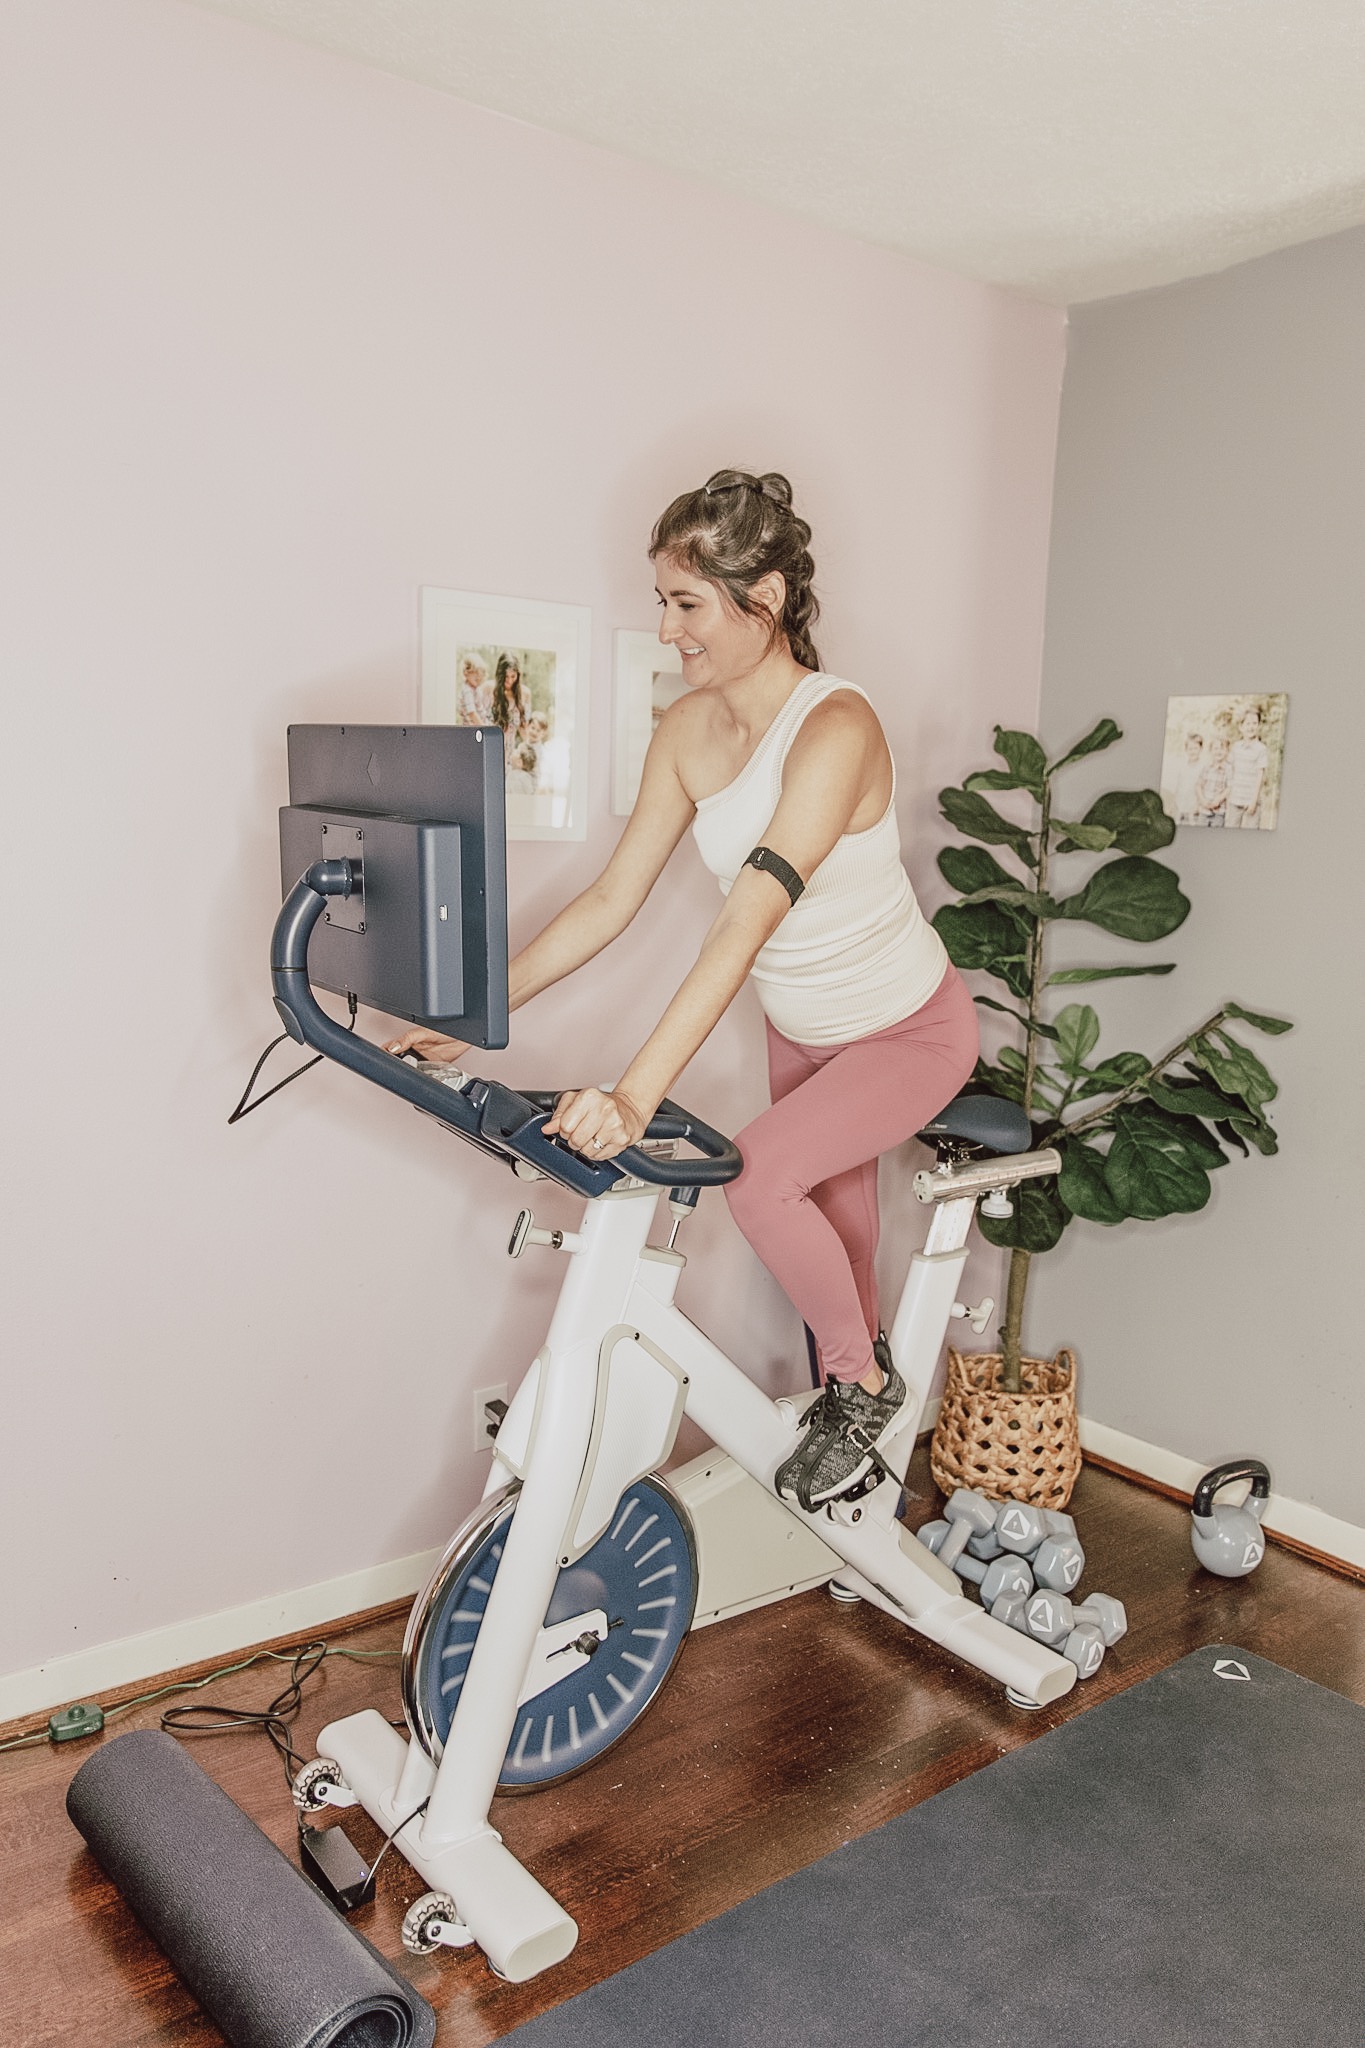 15 Minute Myx Fitness Bike Ratings for Women